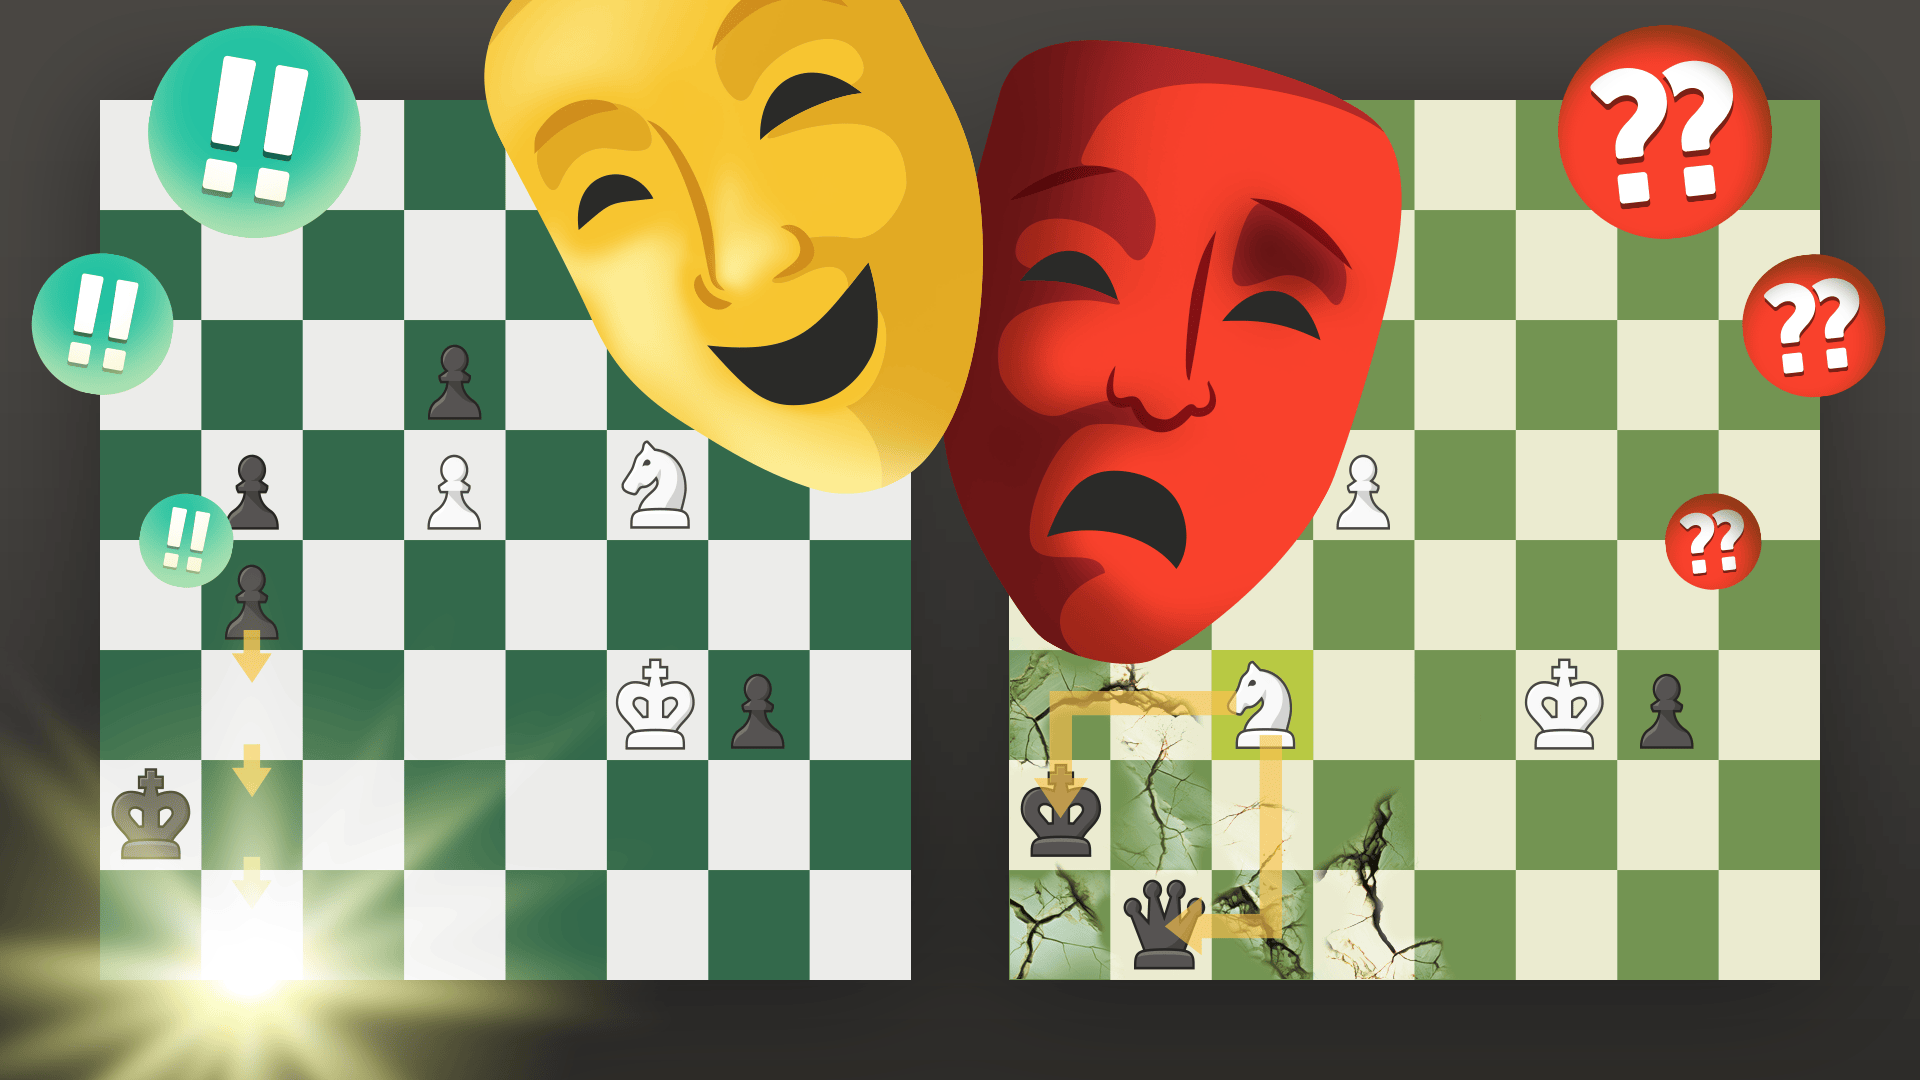 国际象棋是艺术！ - Chess.com